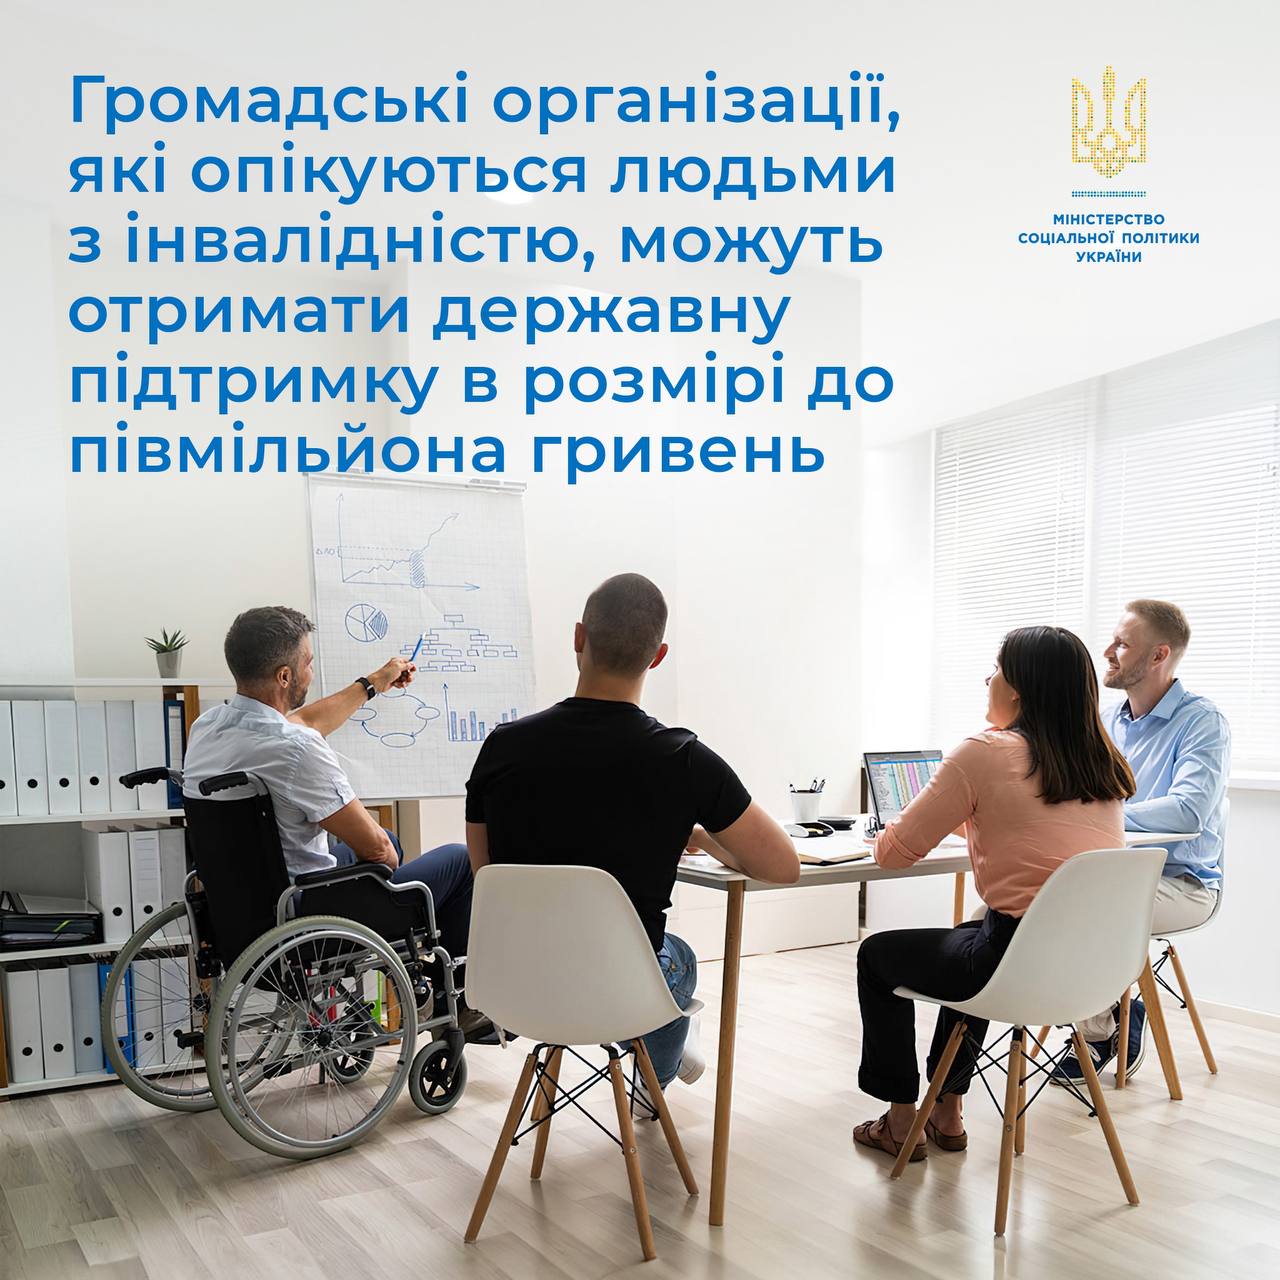 Громадські організації, які опікуються людьми з інвалідністю, можуть отримати державну підтримку в розмірі до півмільйона гривень